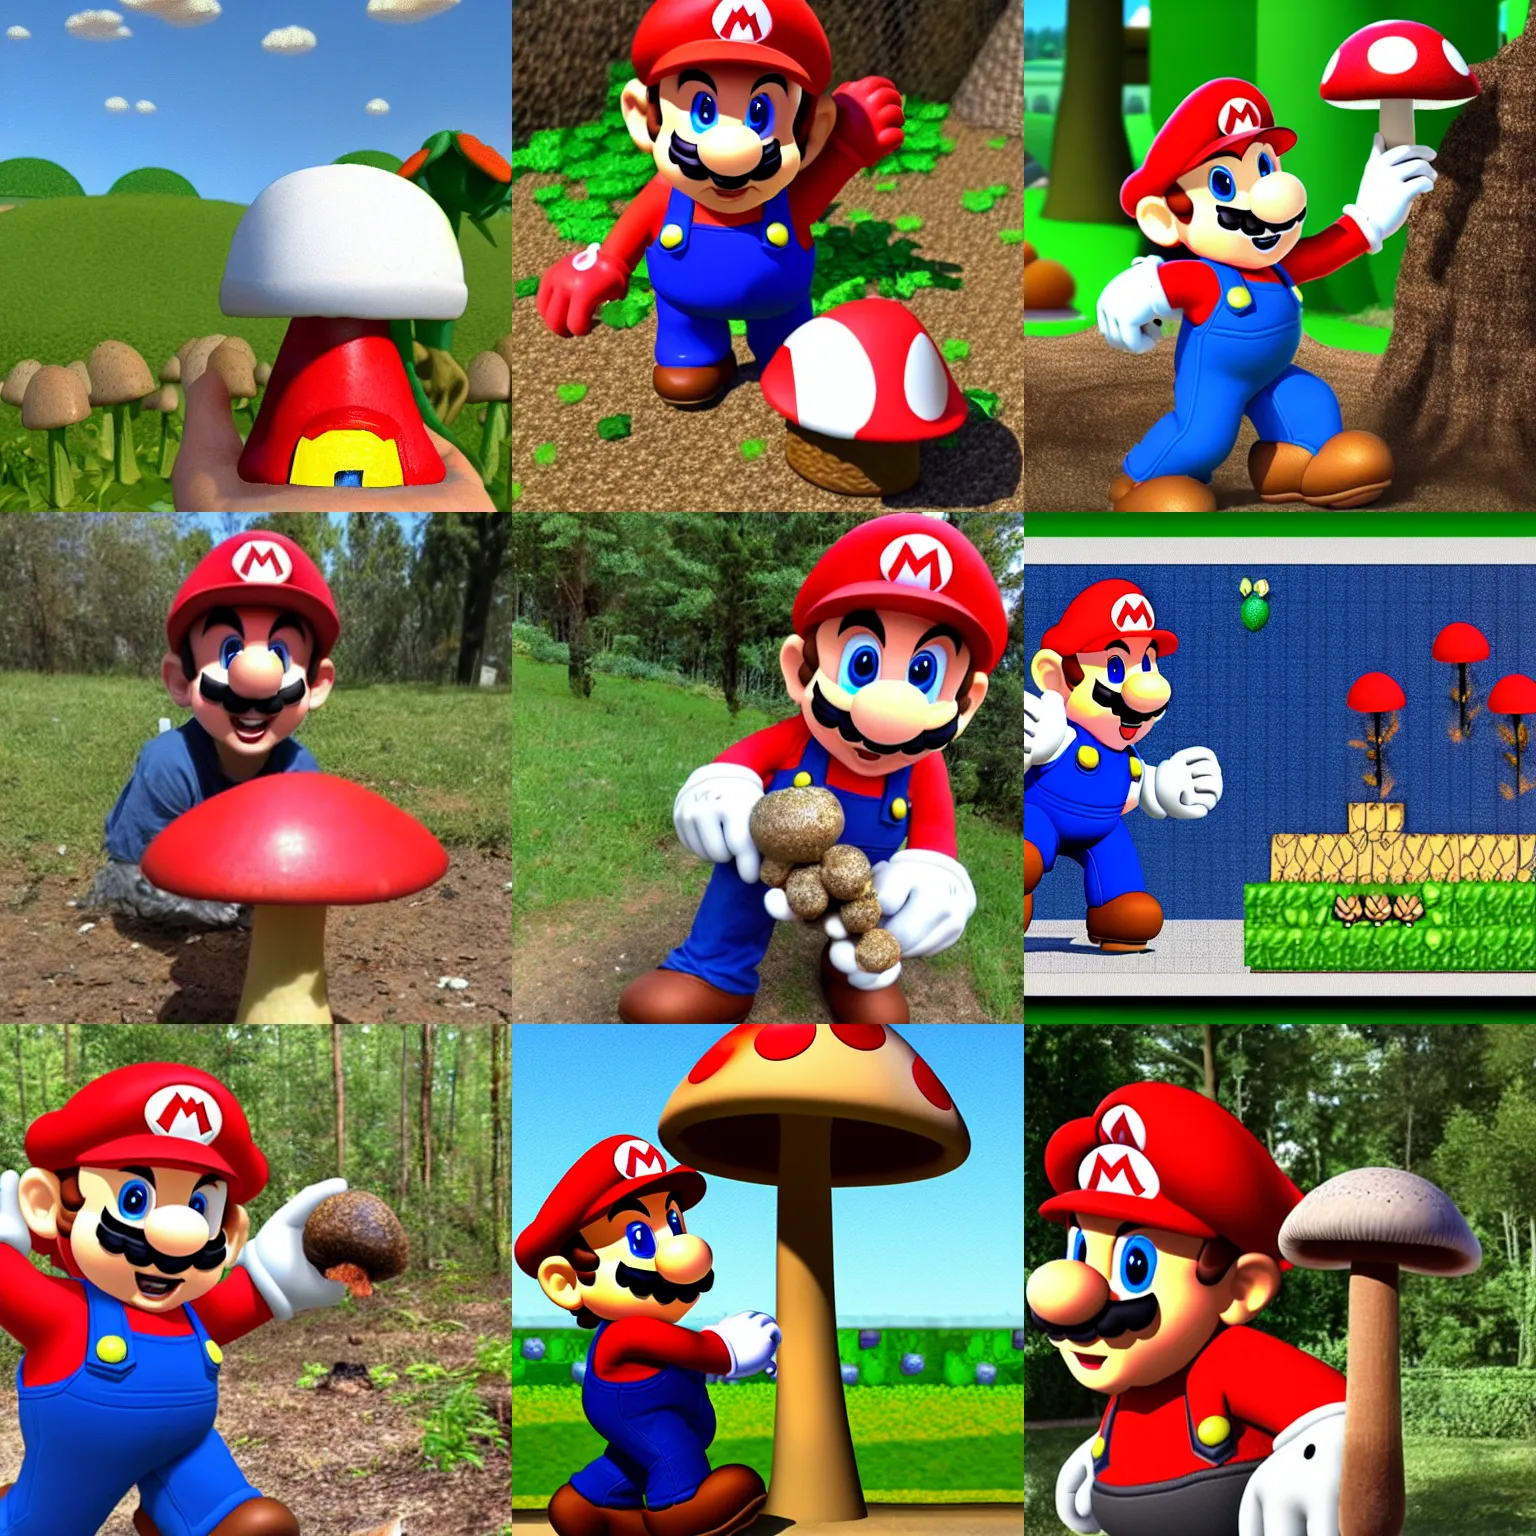 Prompt: Mario found a mushroom